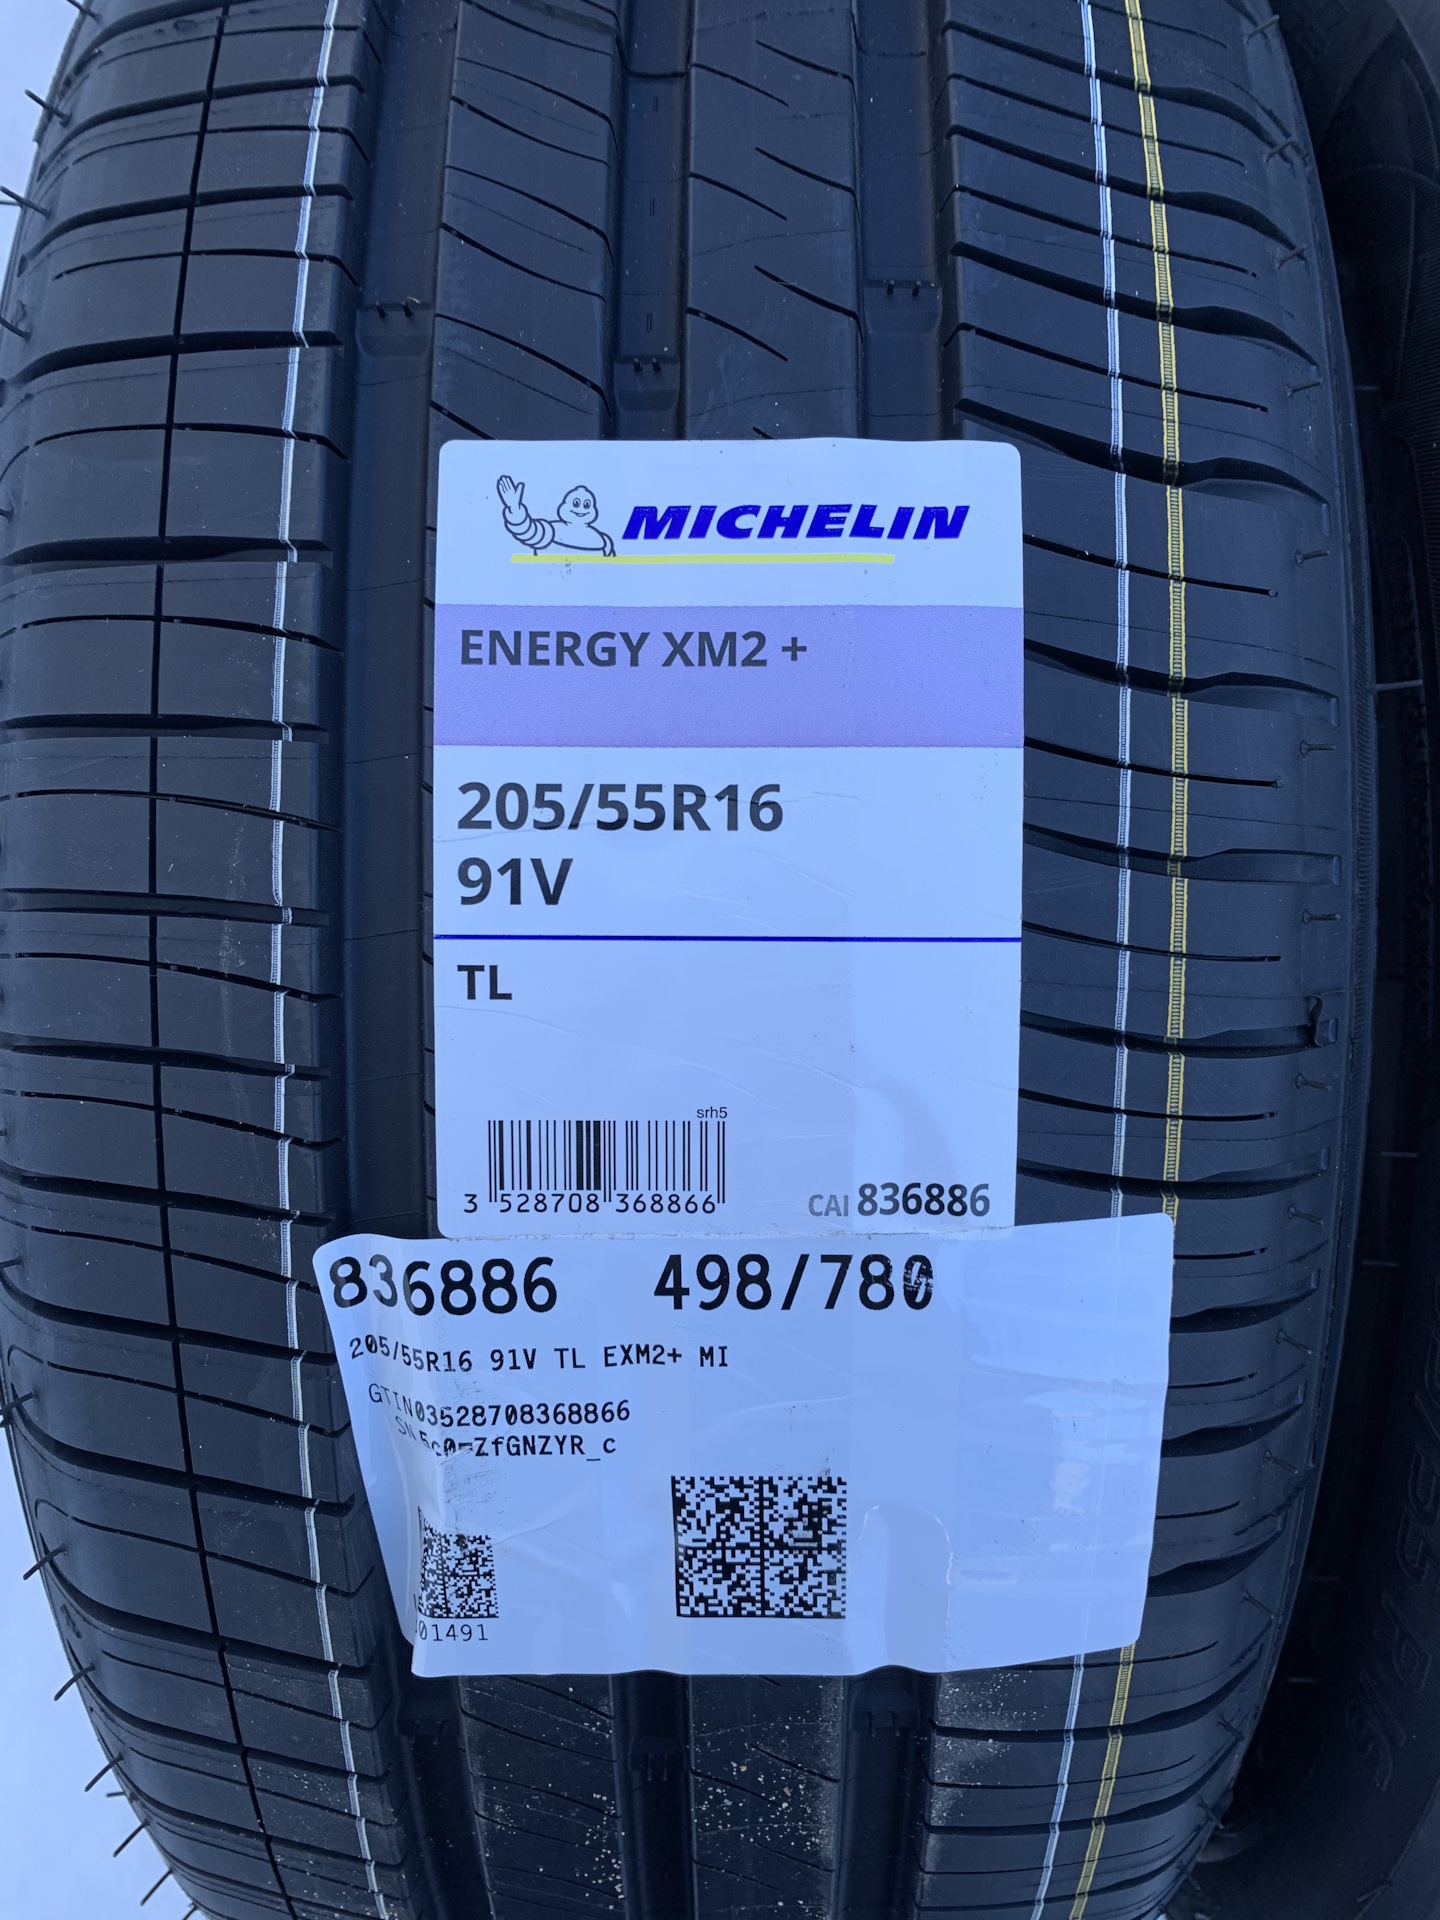 Michelin energy xm2 цены. Michelin Energy xm2 +205/55 r16 91v. Мишлен xm2 Plus 205 55 16. Шина Michelin Energy xm2 + 205/55 r16 91v. Michelin Energy 205/55 r16.